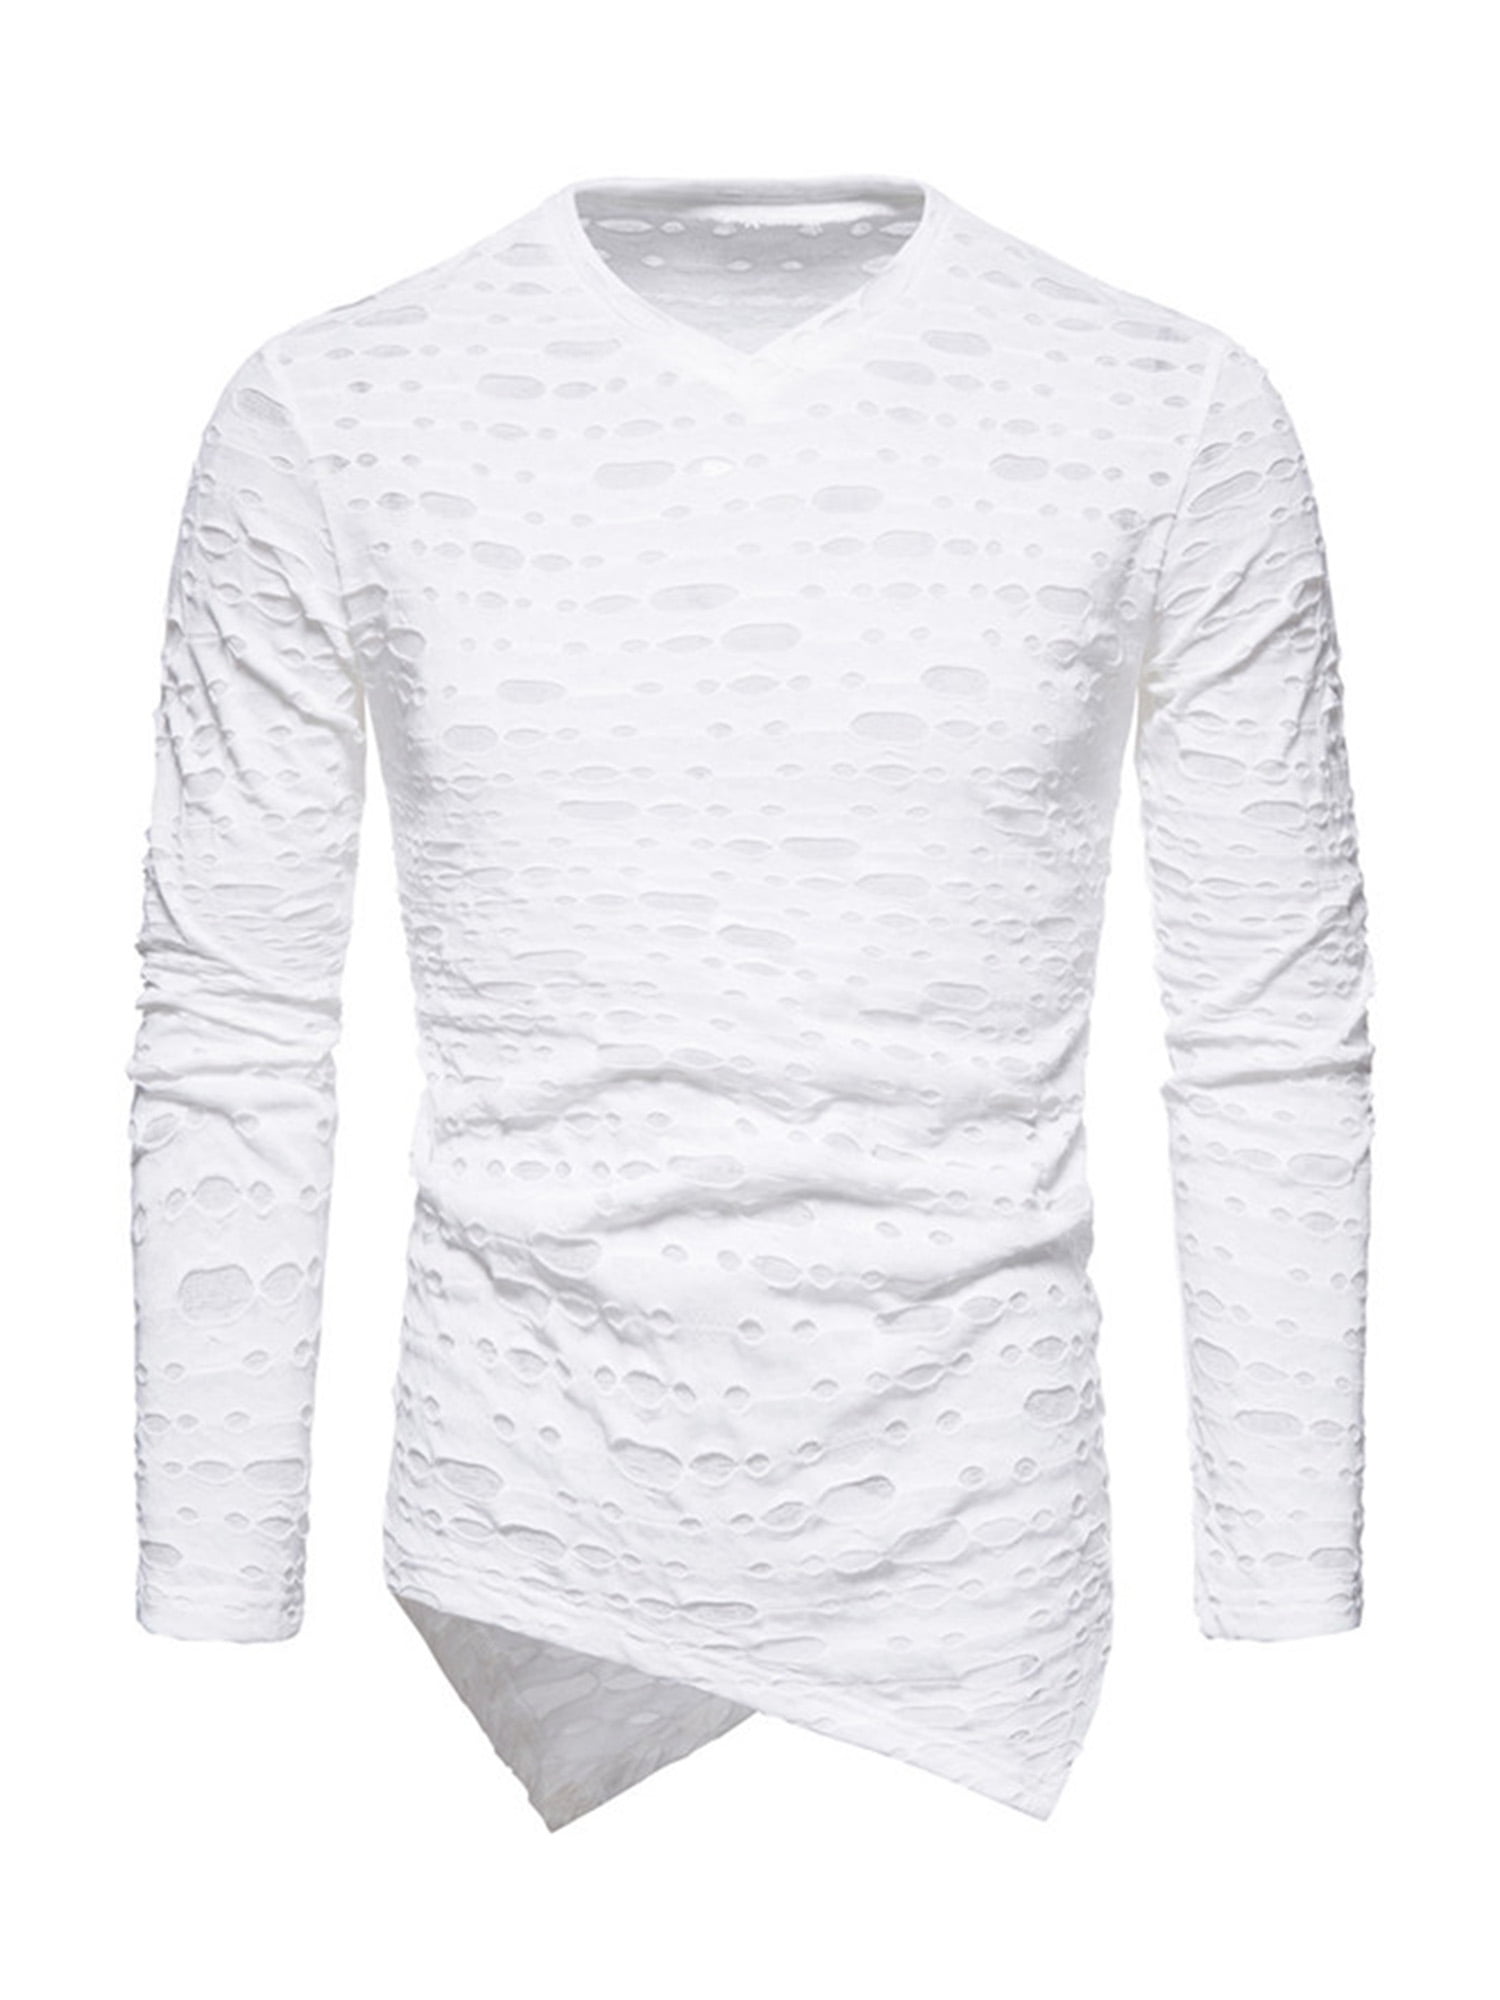 Men Hip Hop T Shirts Irregular Hem Long Sleeve Pullover 